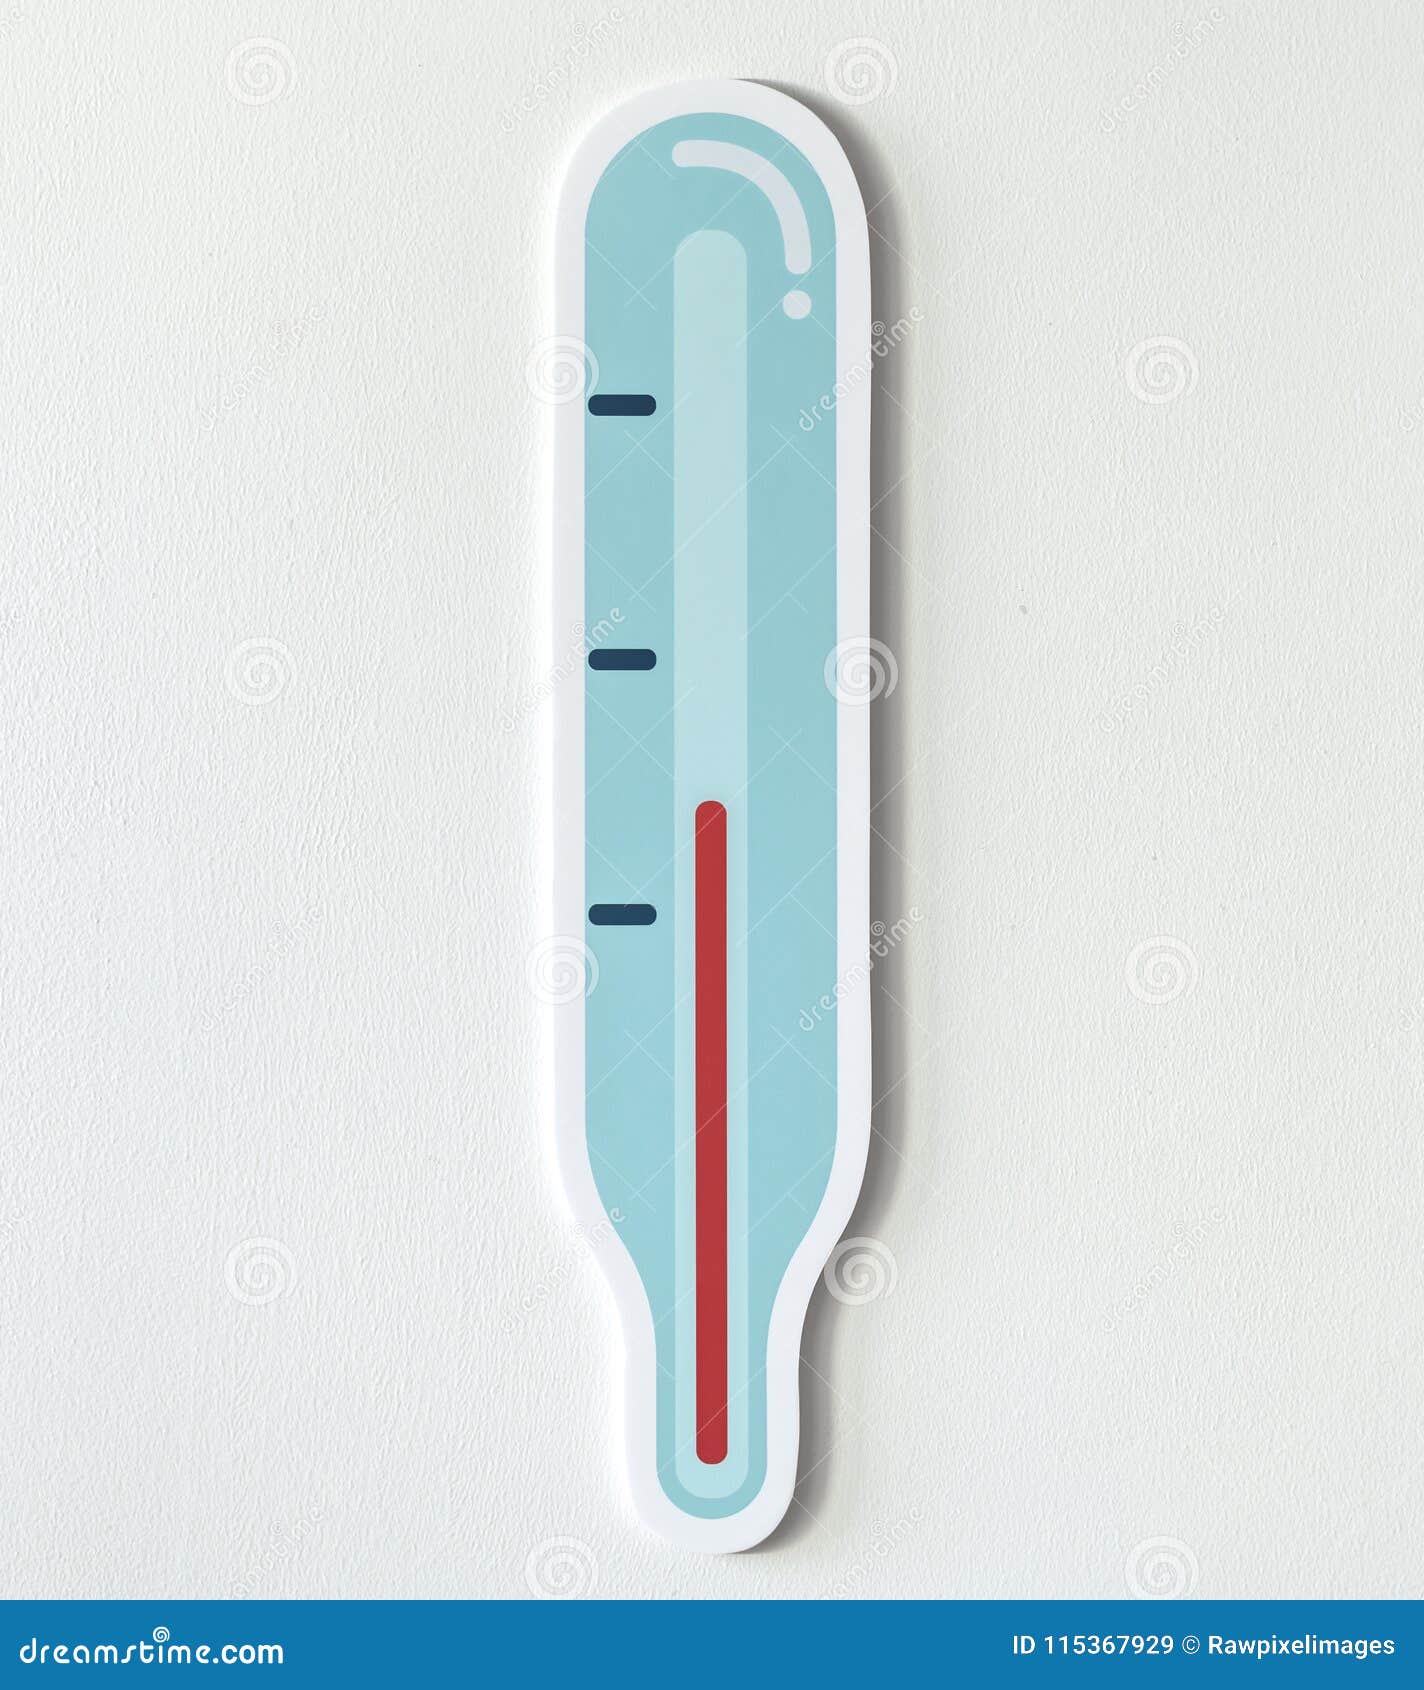 temperature measurement thermometer icon 